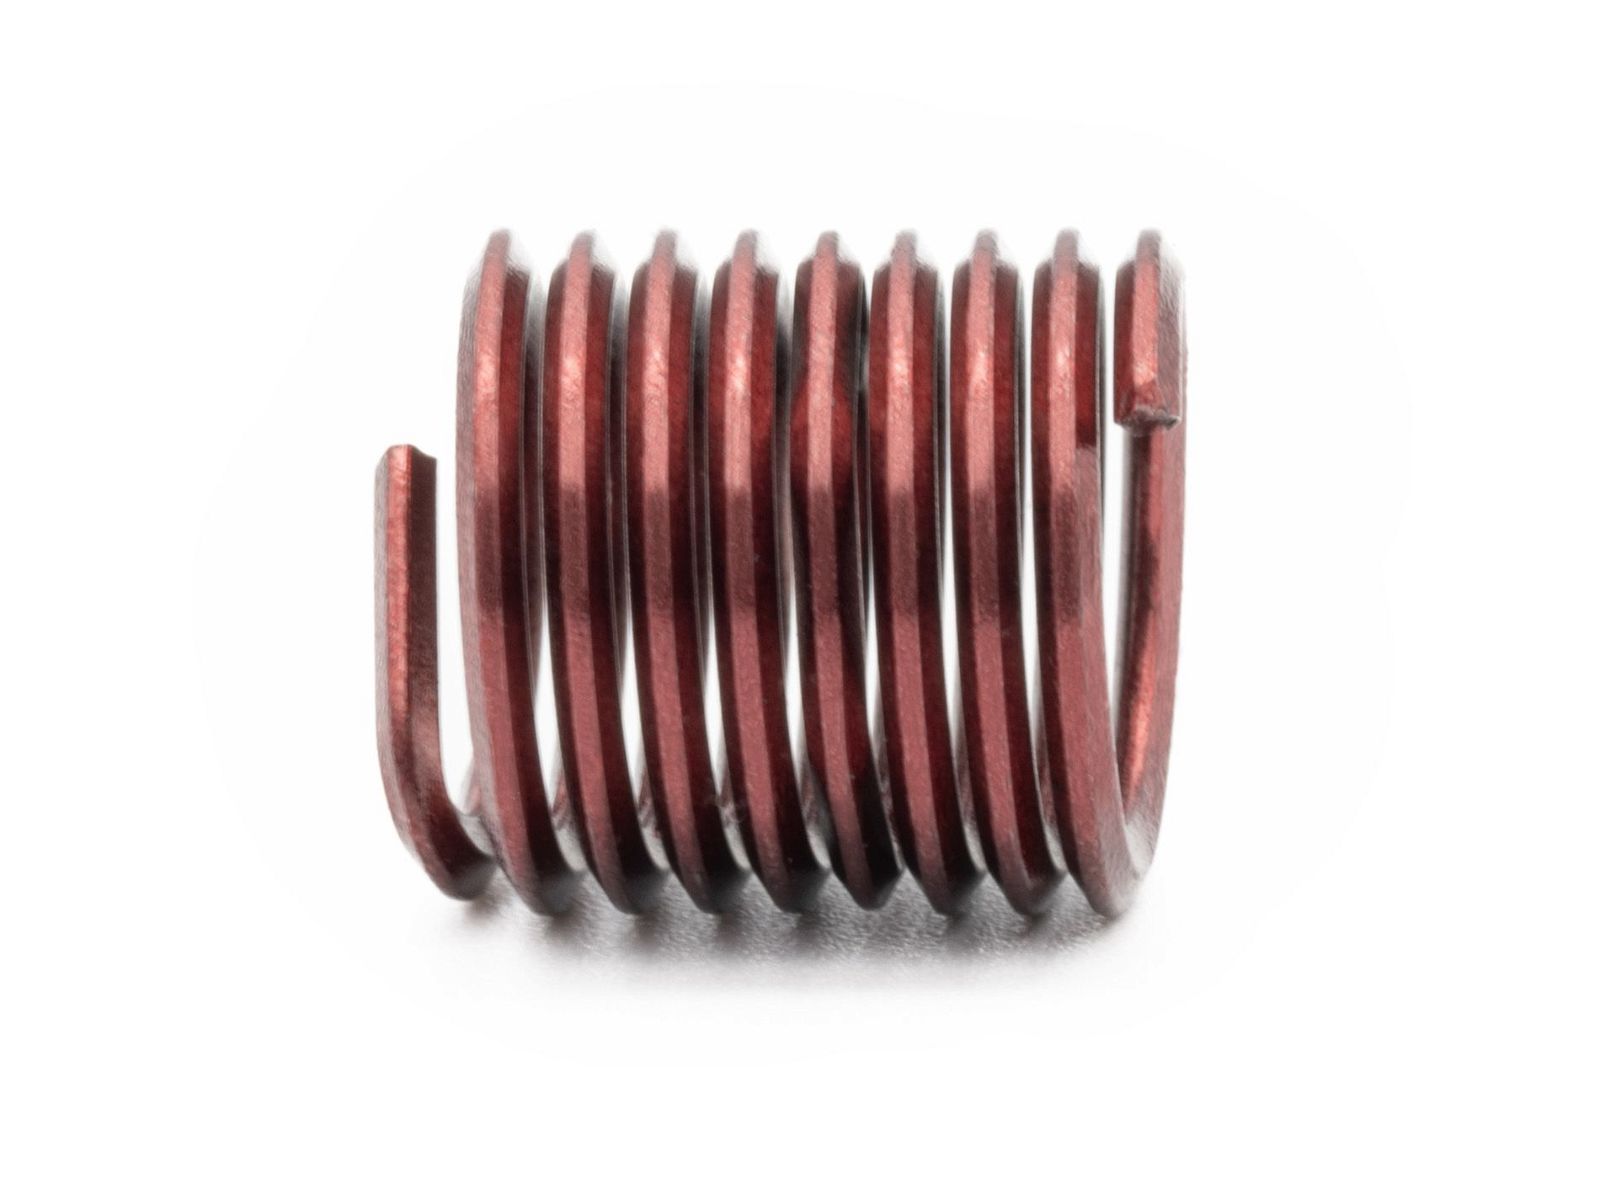 BaerCoil Wire Thread Inserts UNC 5/8 x 11 - 1.5 D (23.81 mm) - screw grip (screw locking) - 50 pcs.